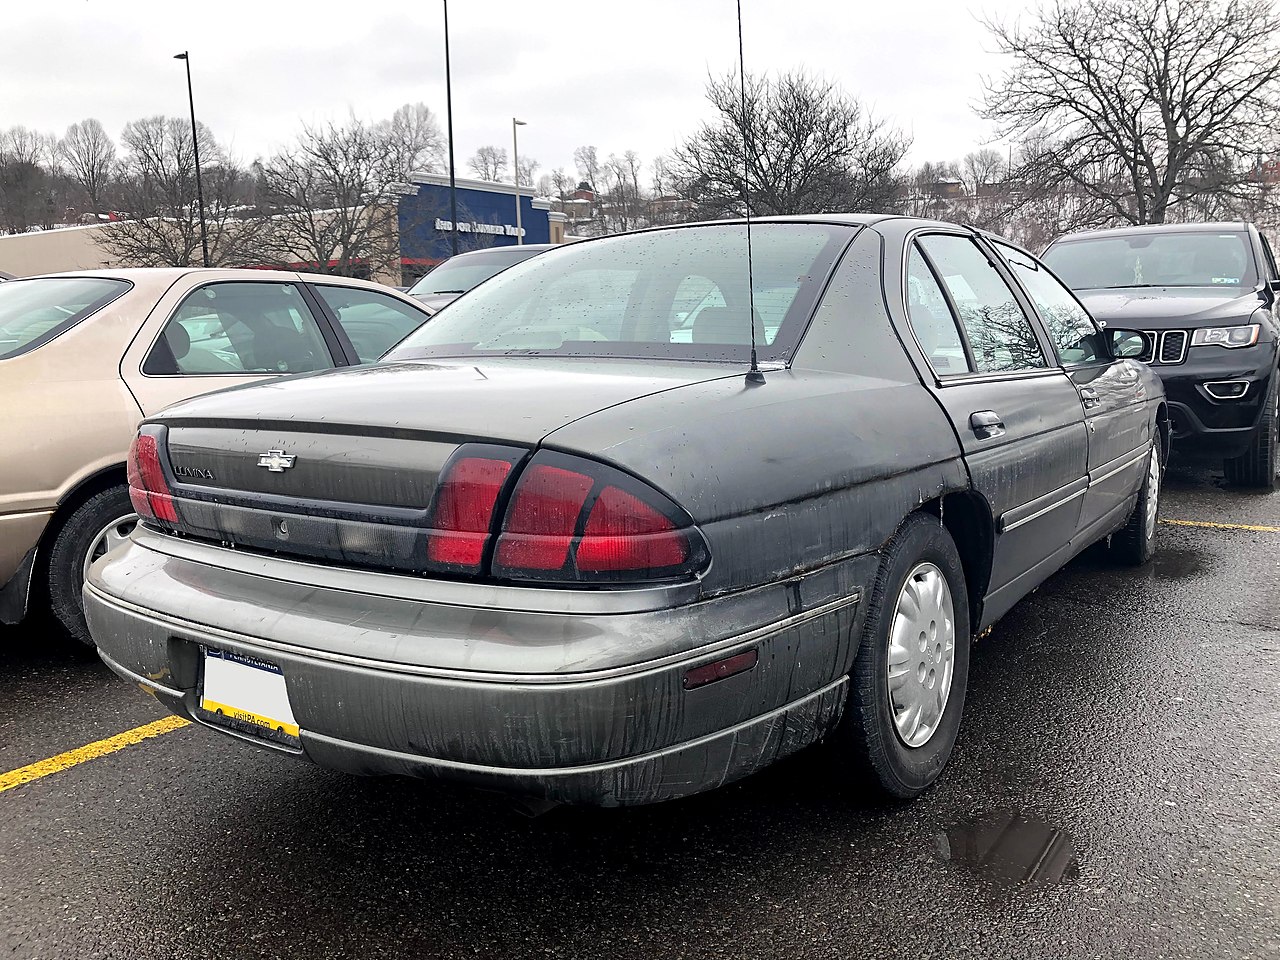 File:1998 Chevrolet Lumina (rear).jpg - Wikimedia Commons